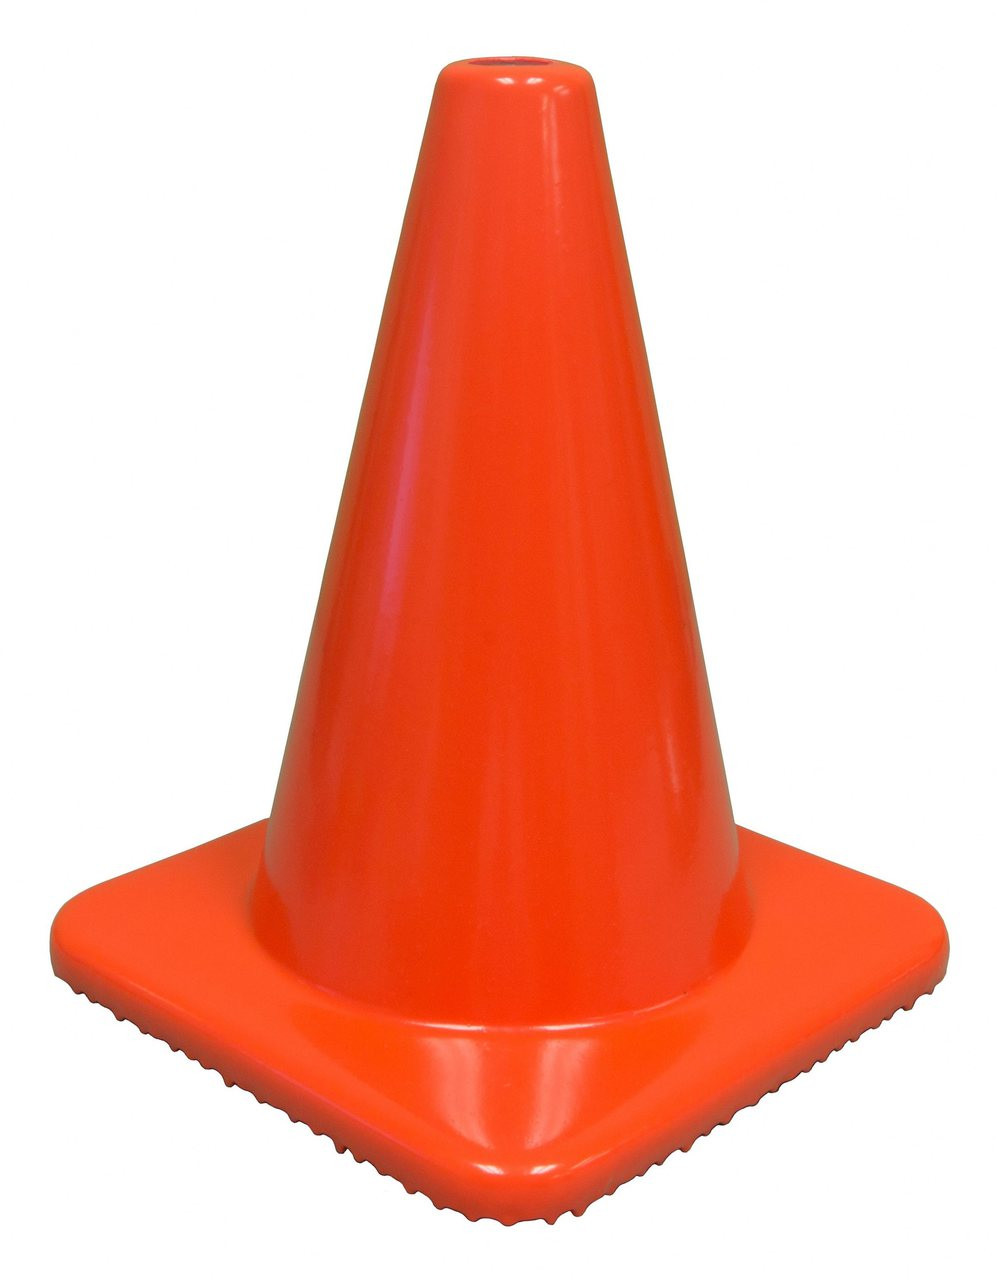 12 All Orange Traffic Safety Cone (512-1) - Kara Company, Inc.